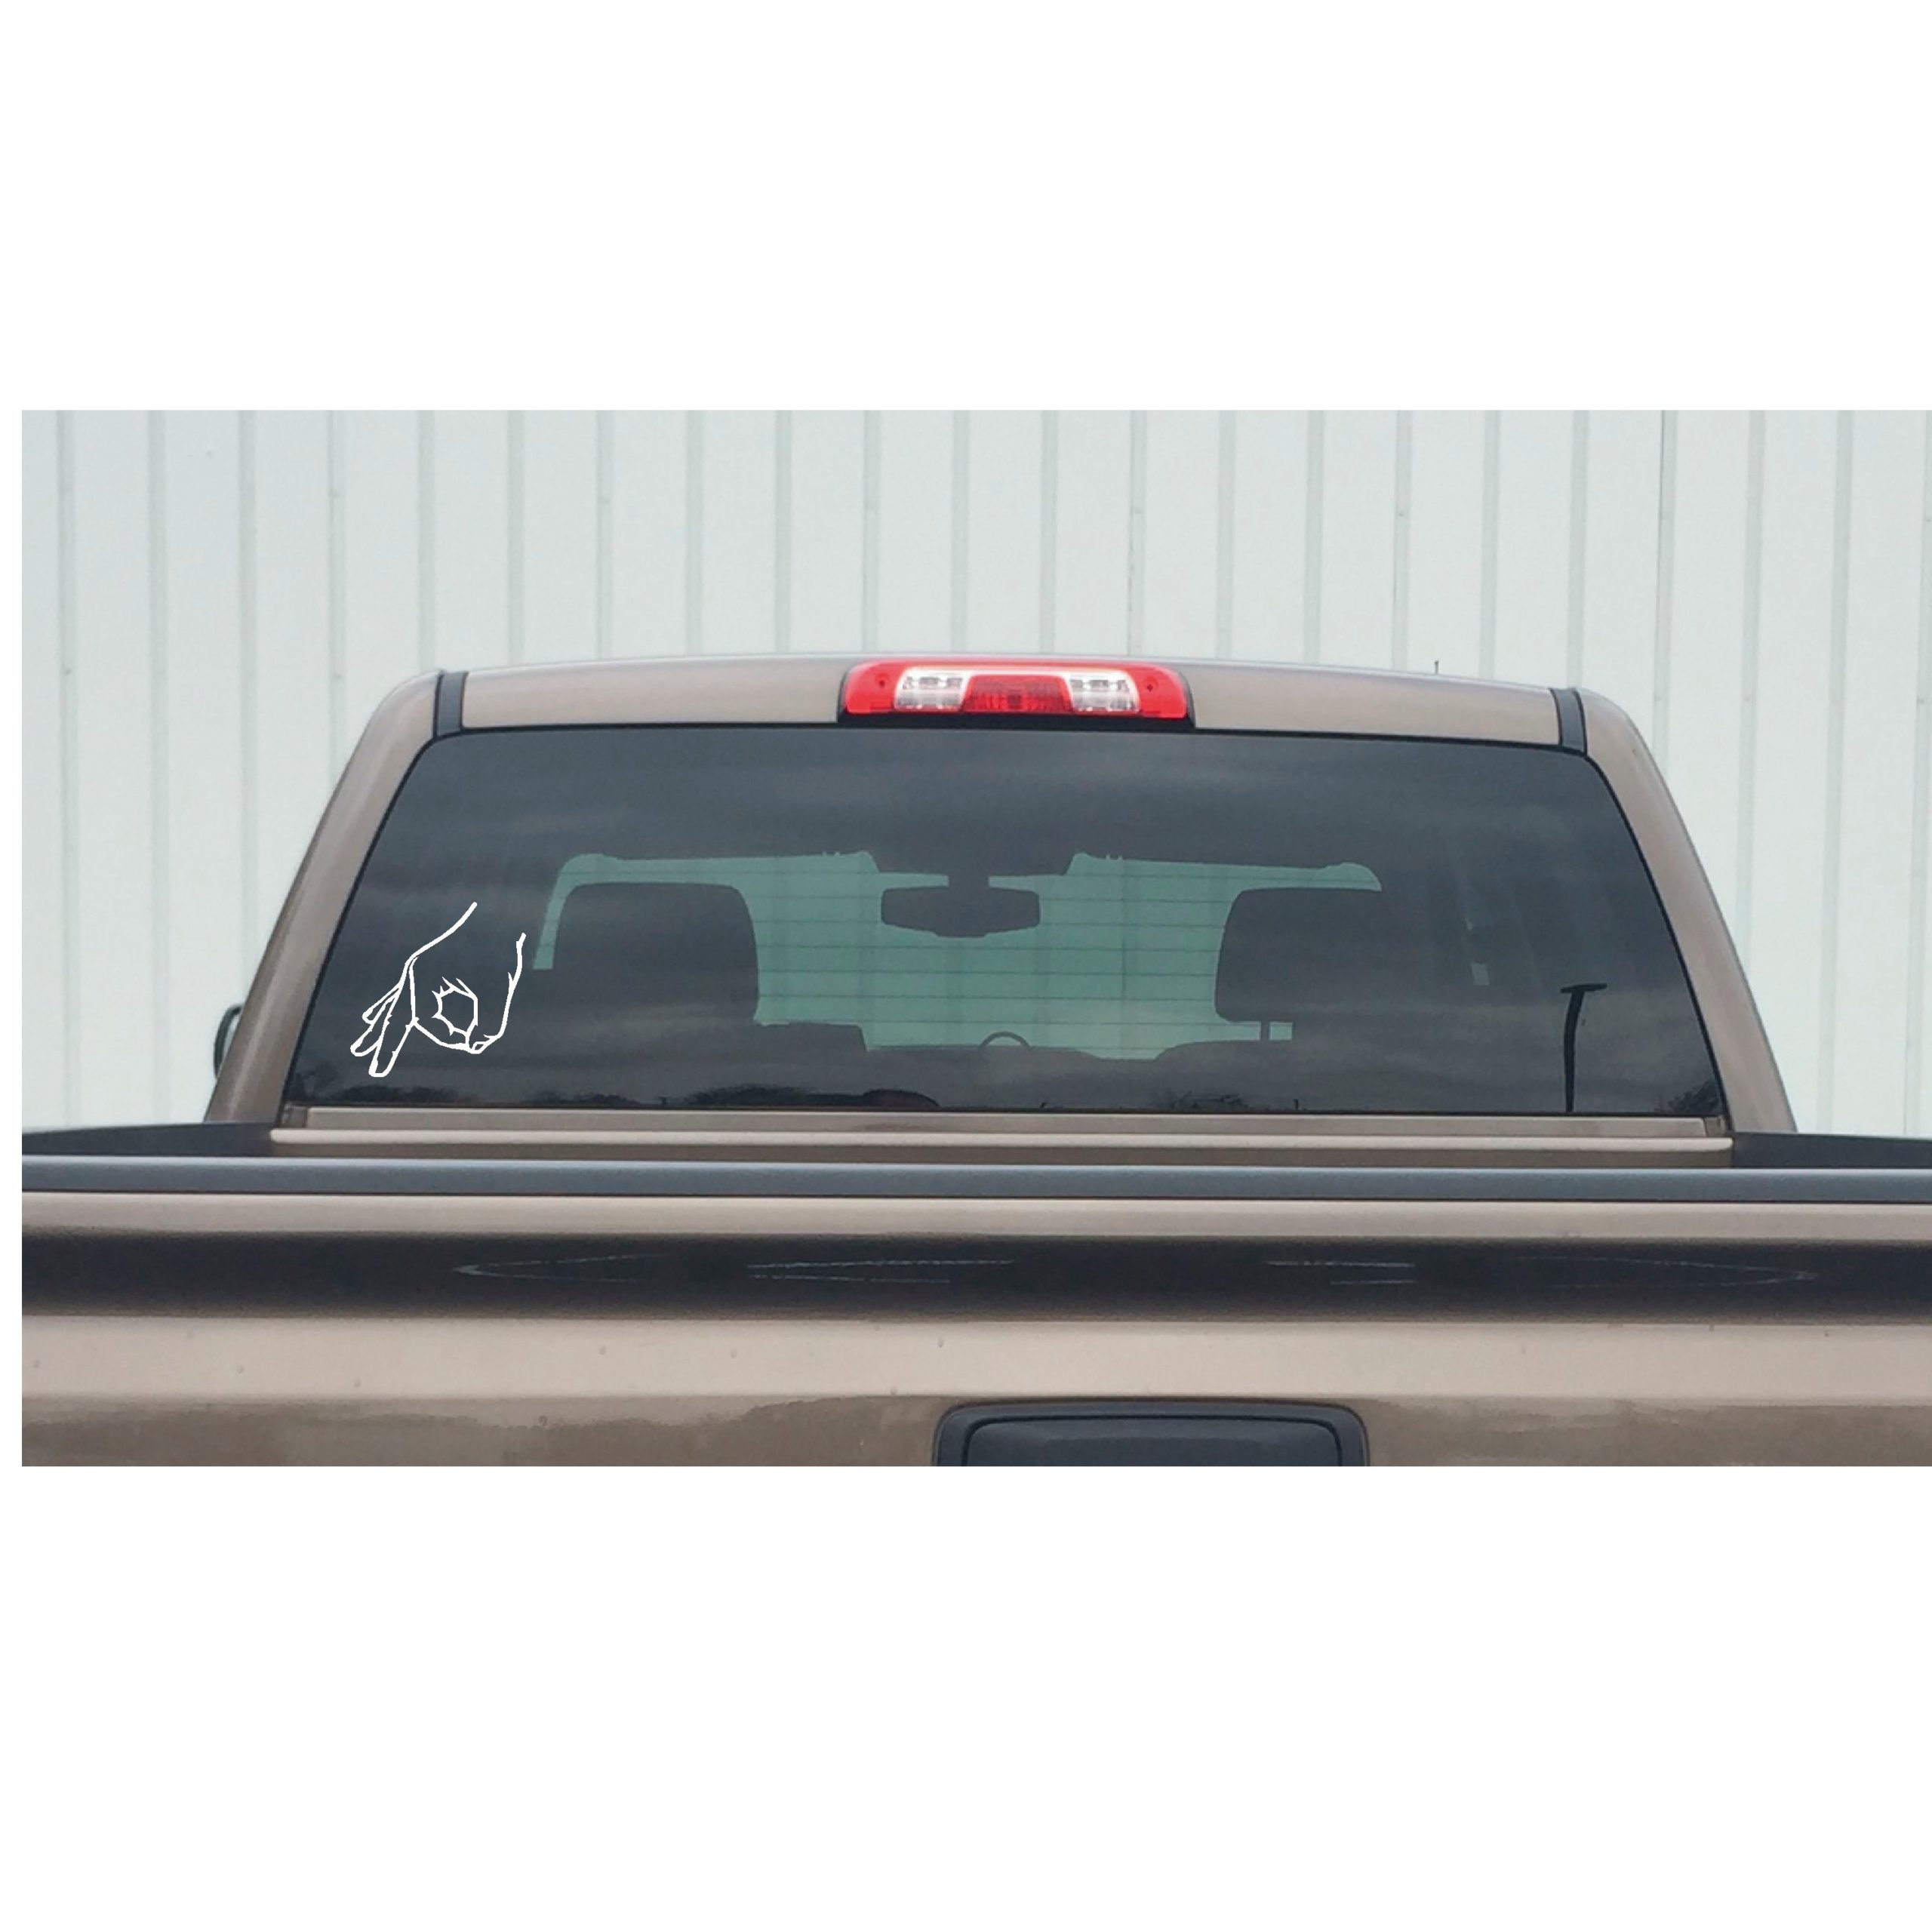 Essential Worker Sticker - Truck Driver Essential Window Decal - Vario